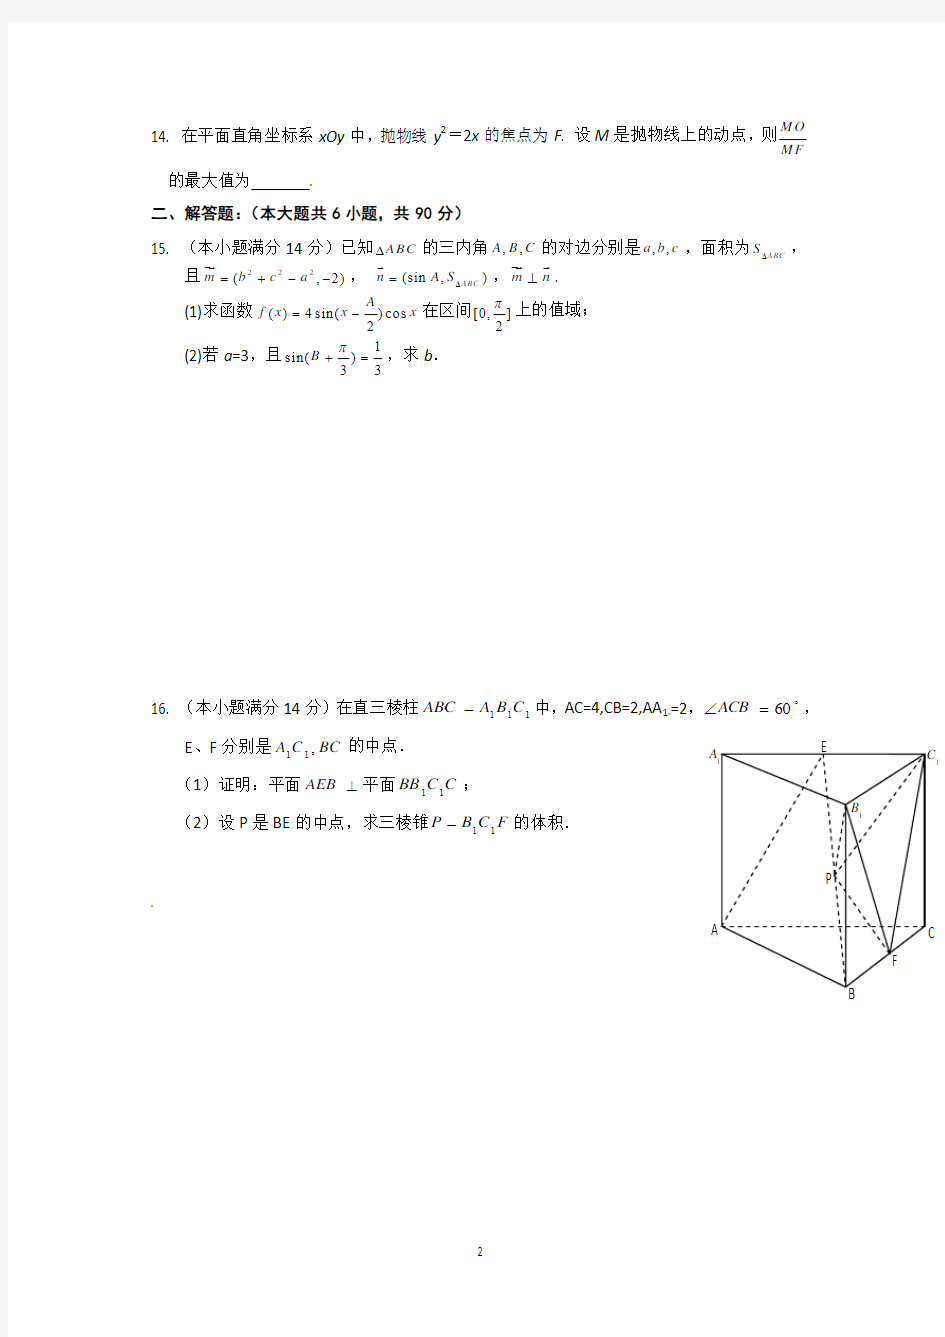 2013年江苏高考数学模拟试卷(三).